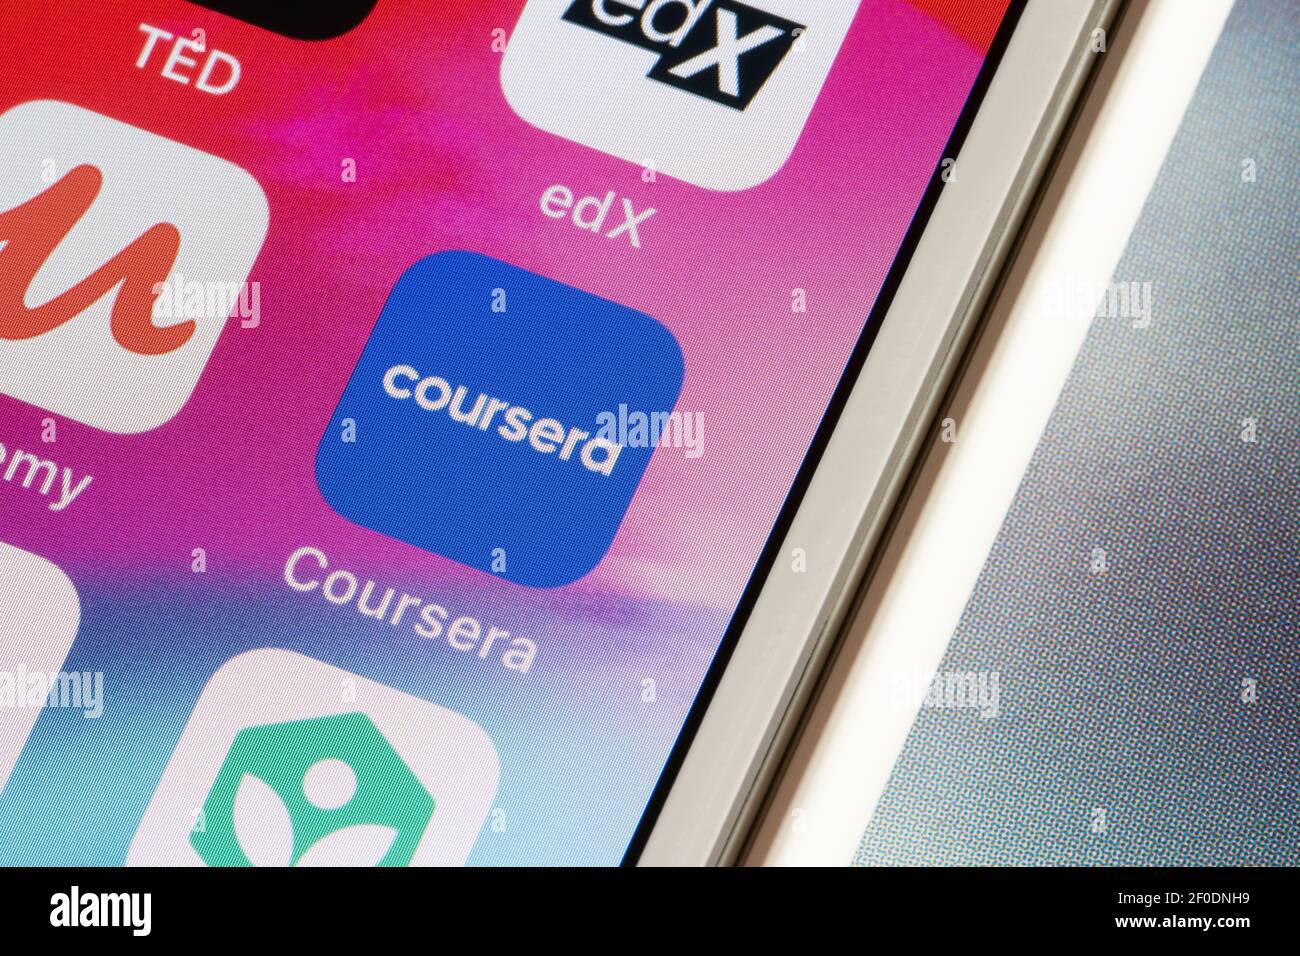 L'icona dell'app Coursera mobile viene visualizzata su un iPhone. Coursera è un grande provider americano di corsi online aperti fondato da Andrew ng e Daphne Koller. Foto Stock